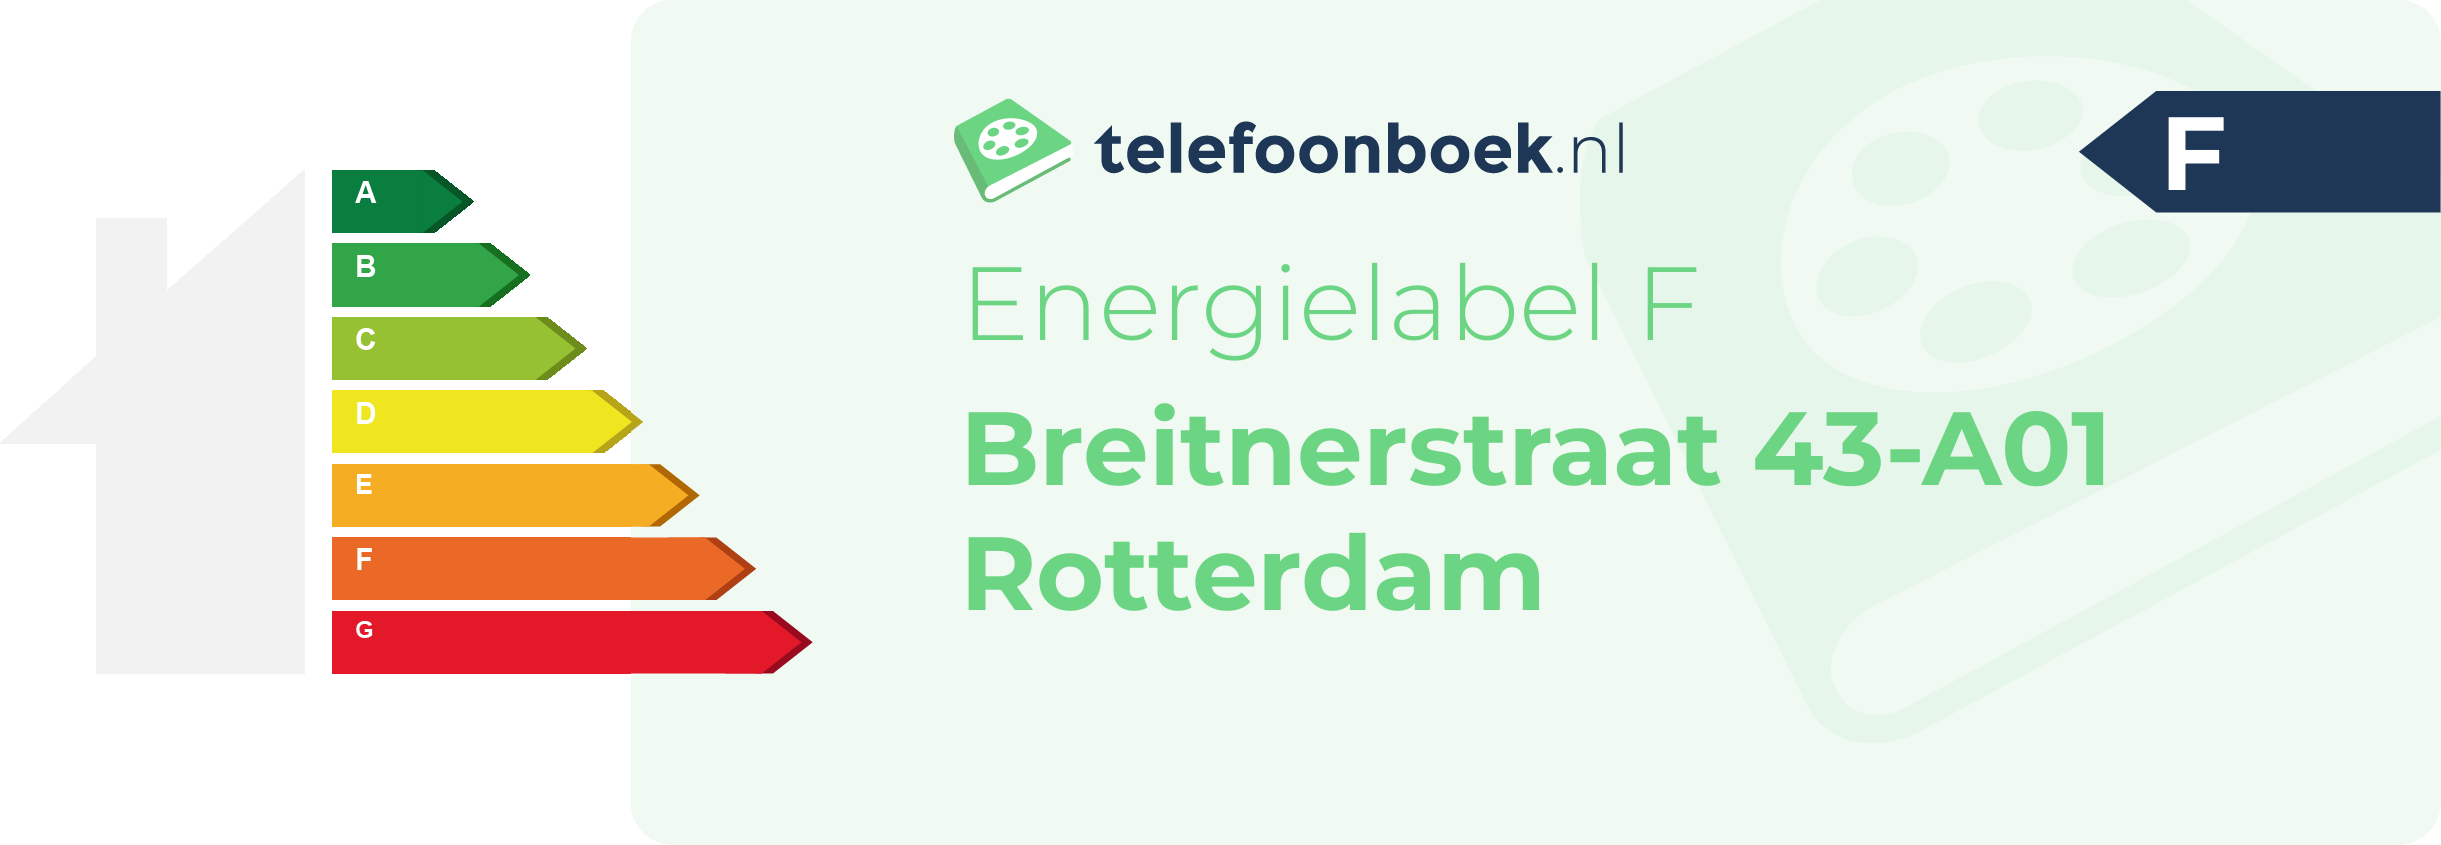 Energielabel Breitnerstraat 43-A01 Rotterdam